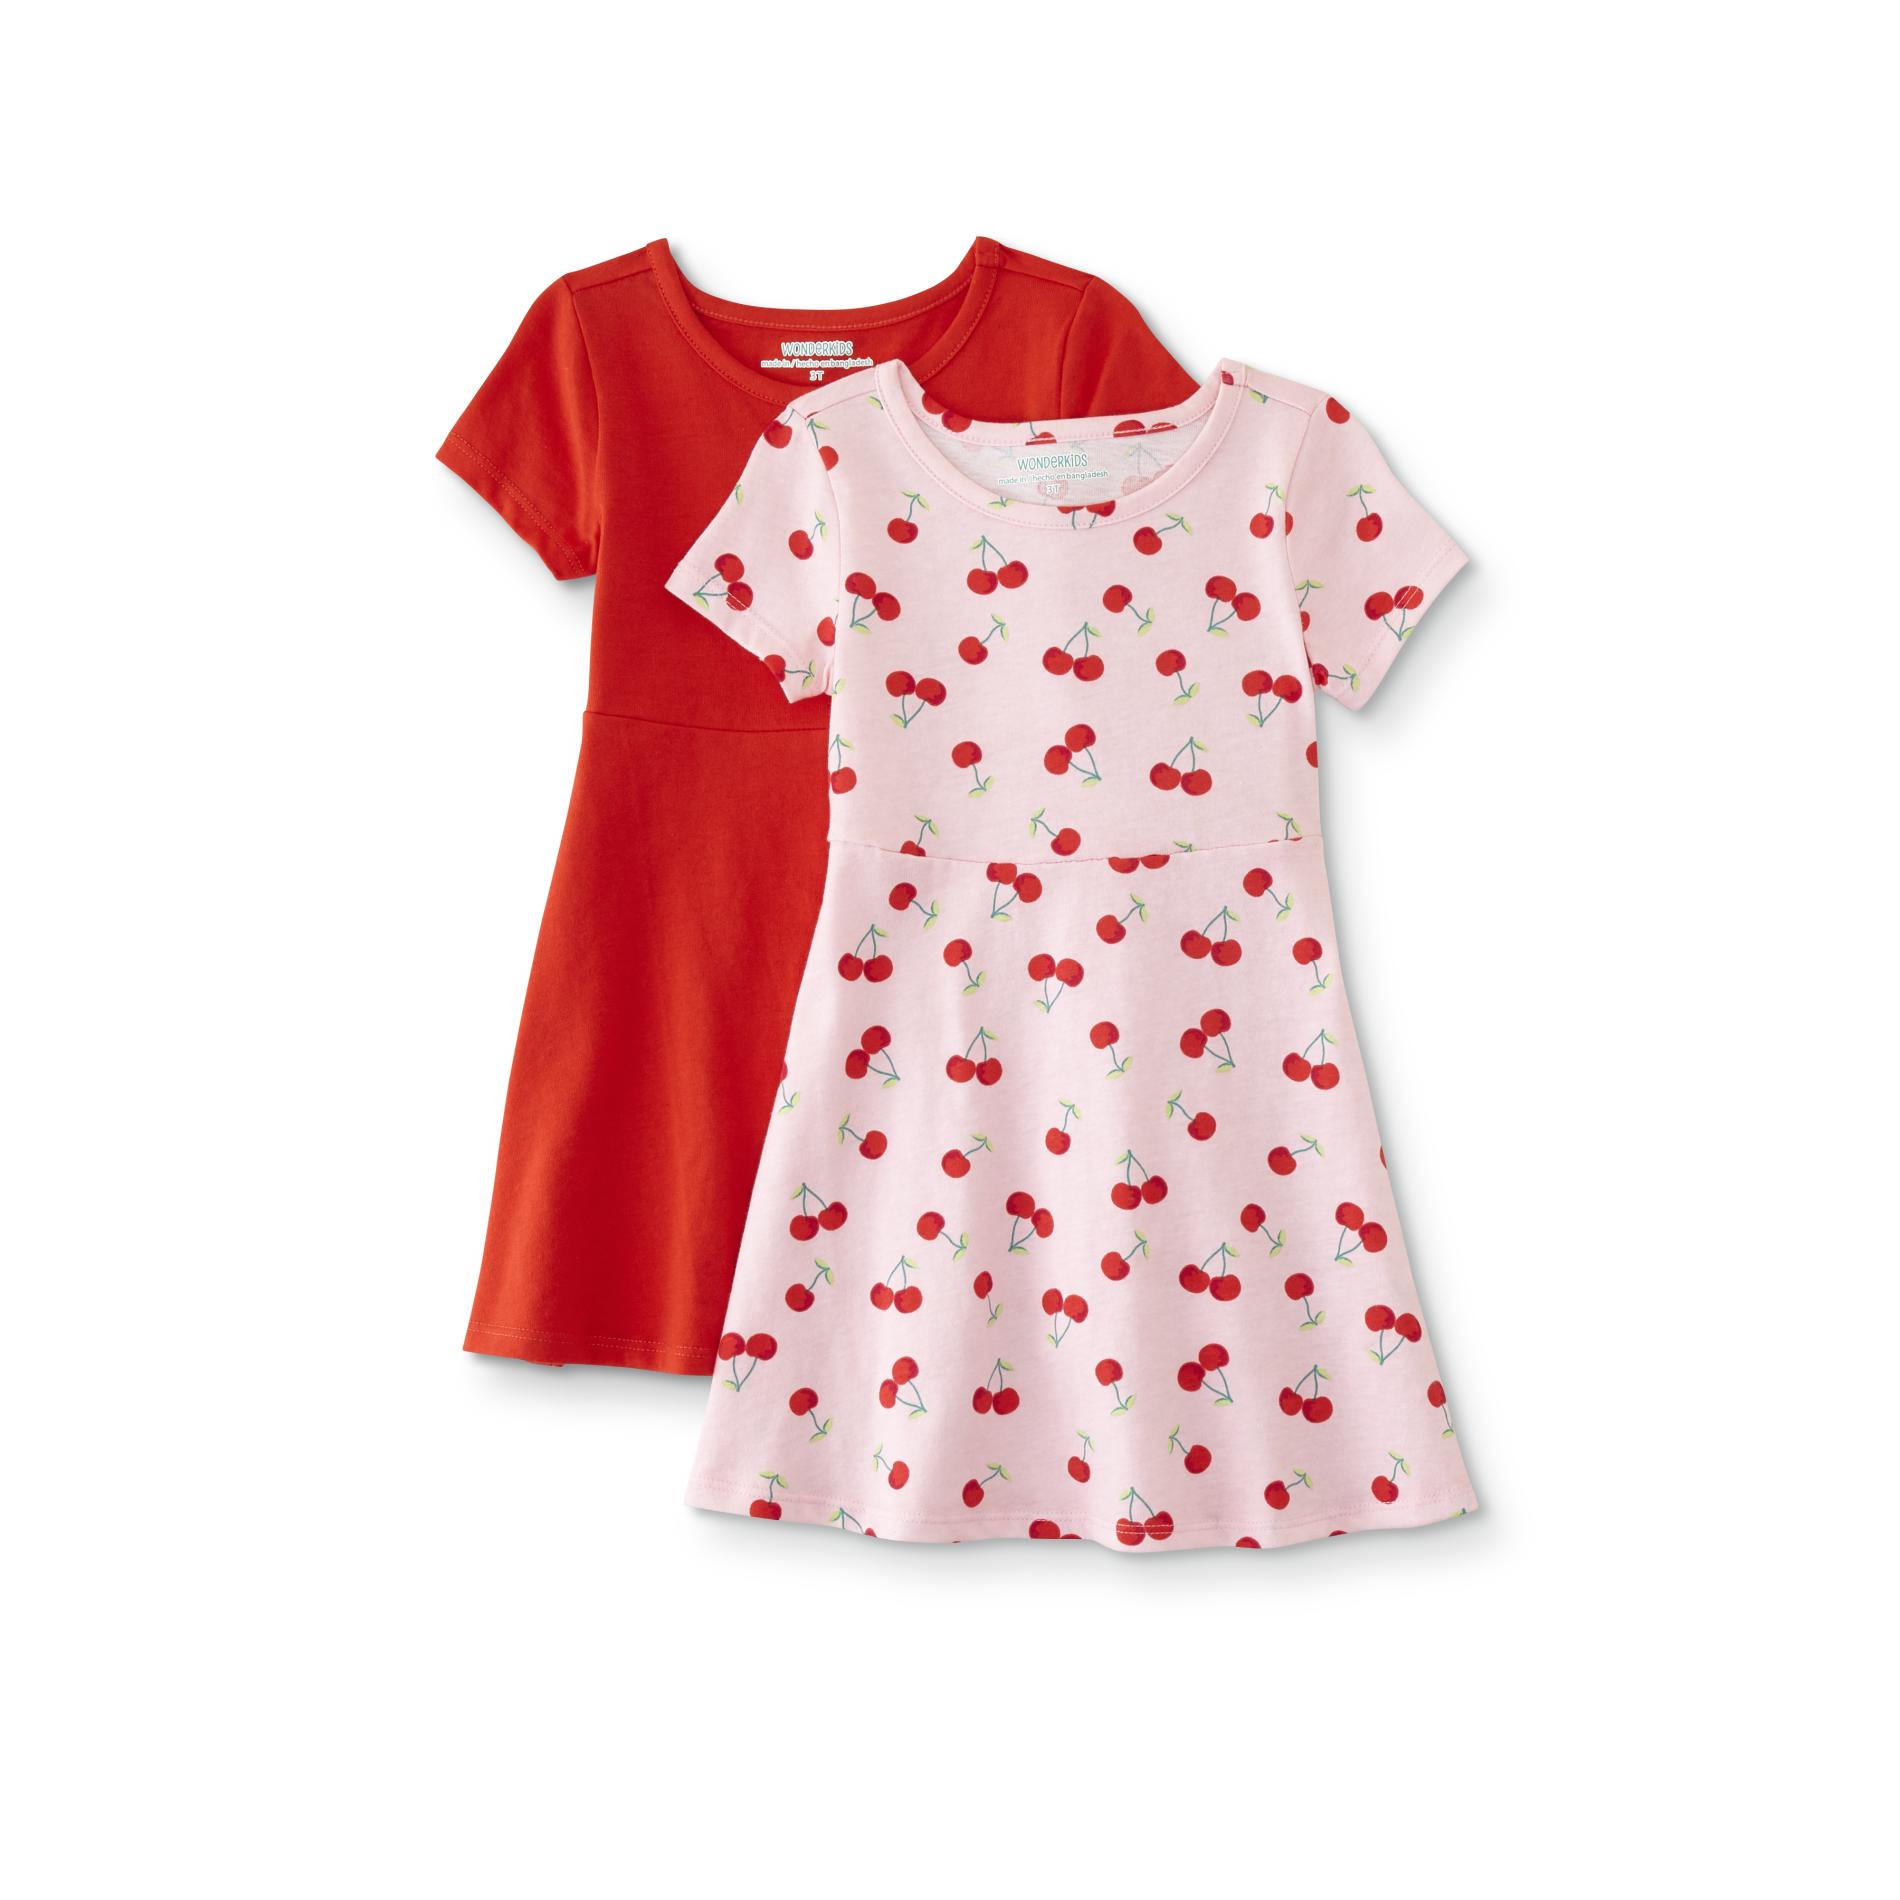 WonderKids Infant & Toddler Girls' 2-Pack Skater Dresses - Solid & Cherries